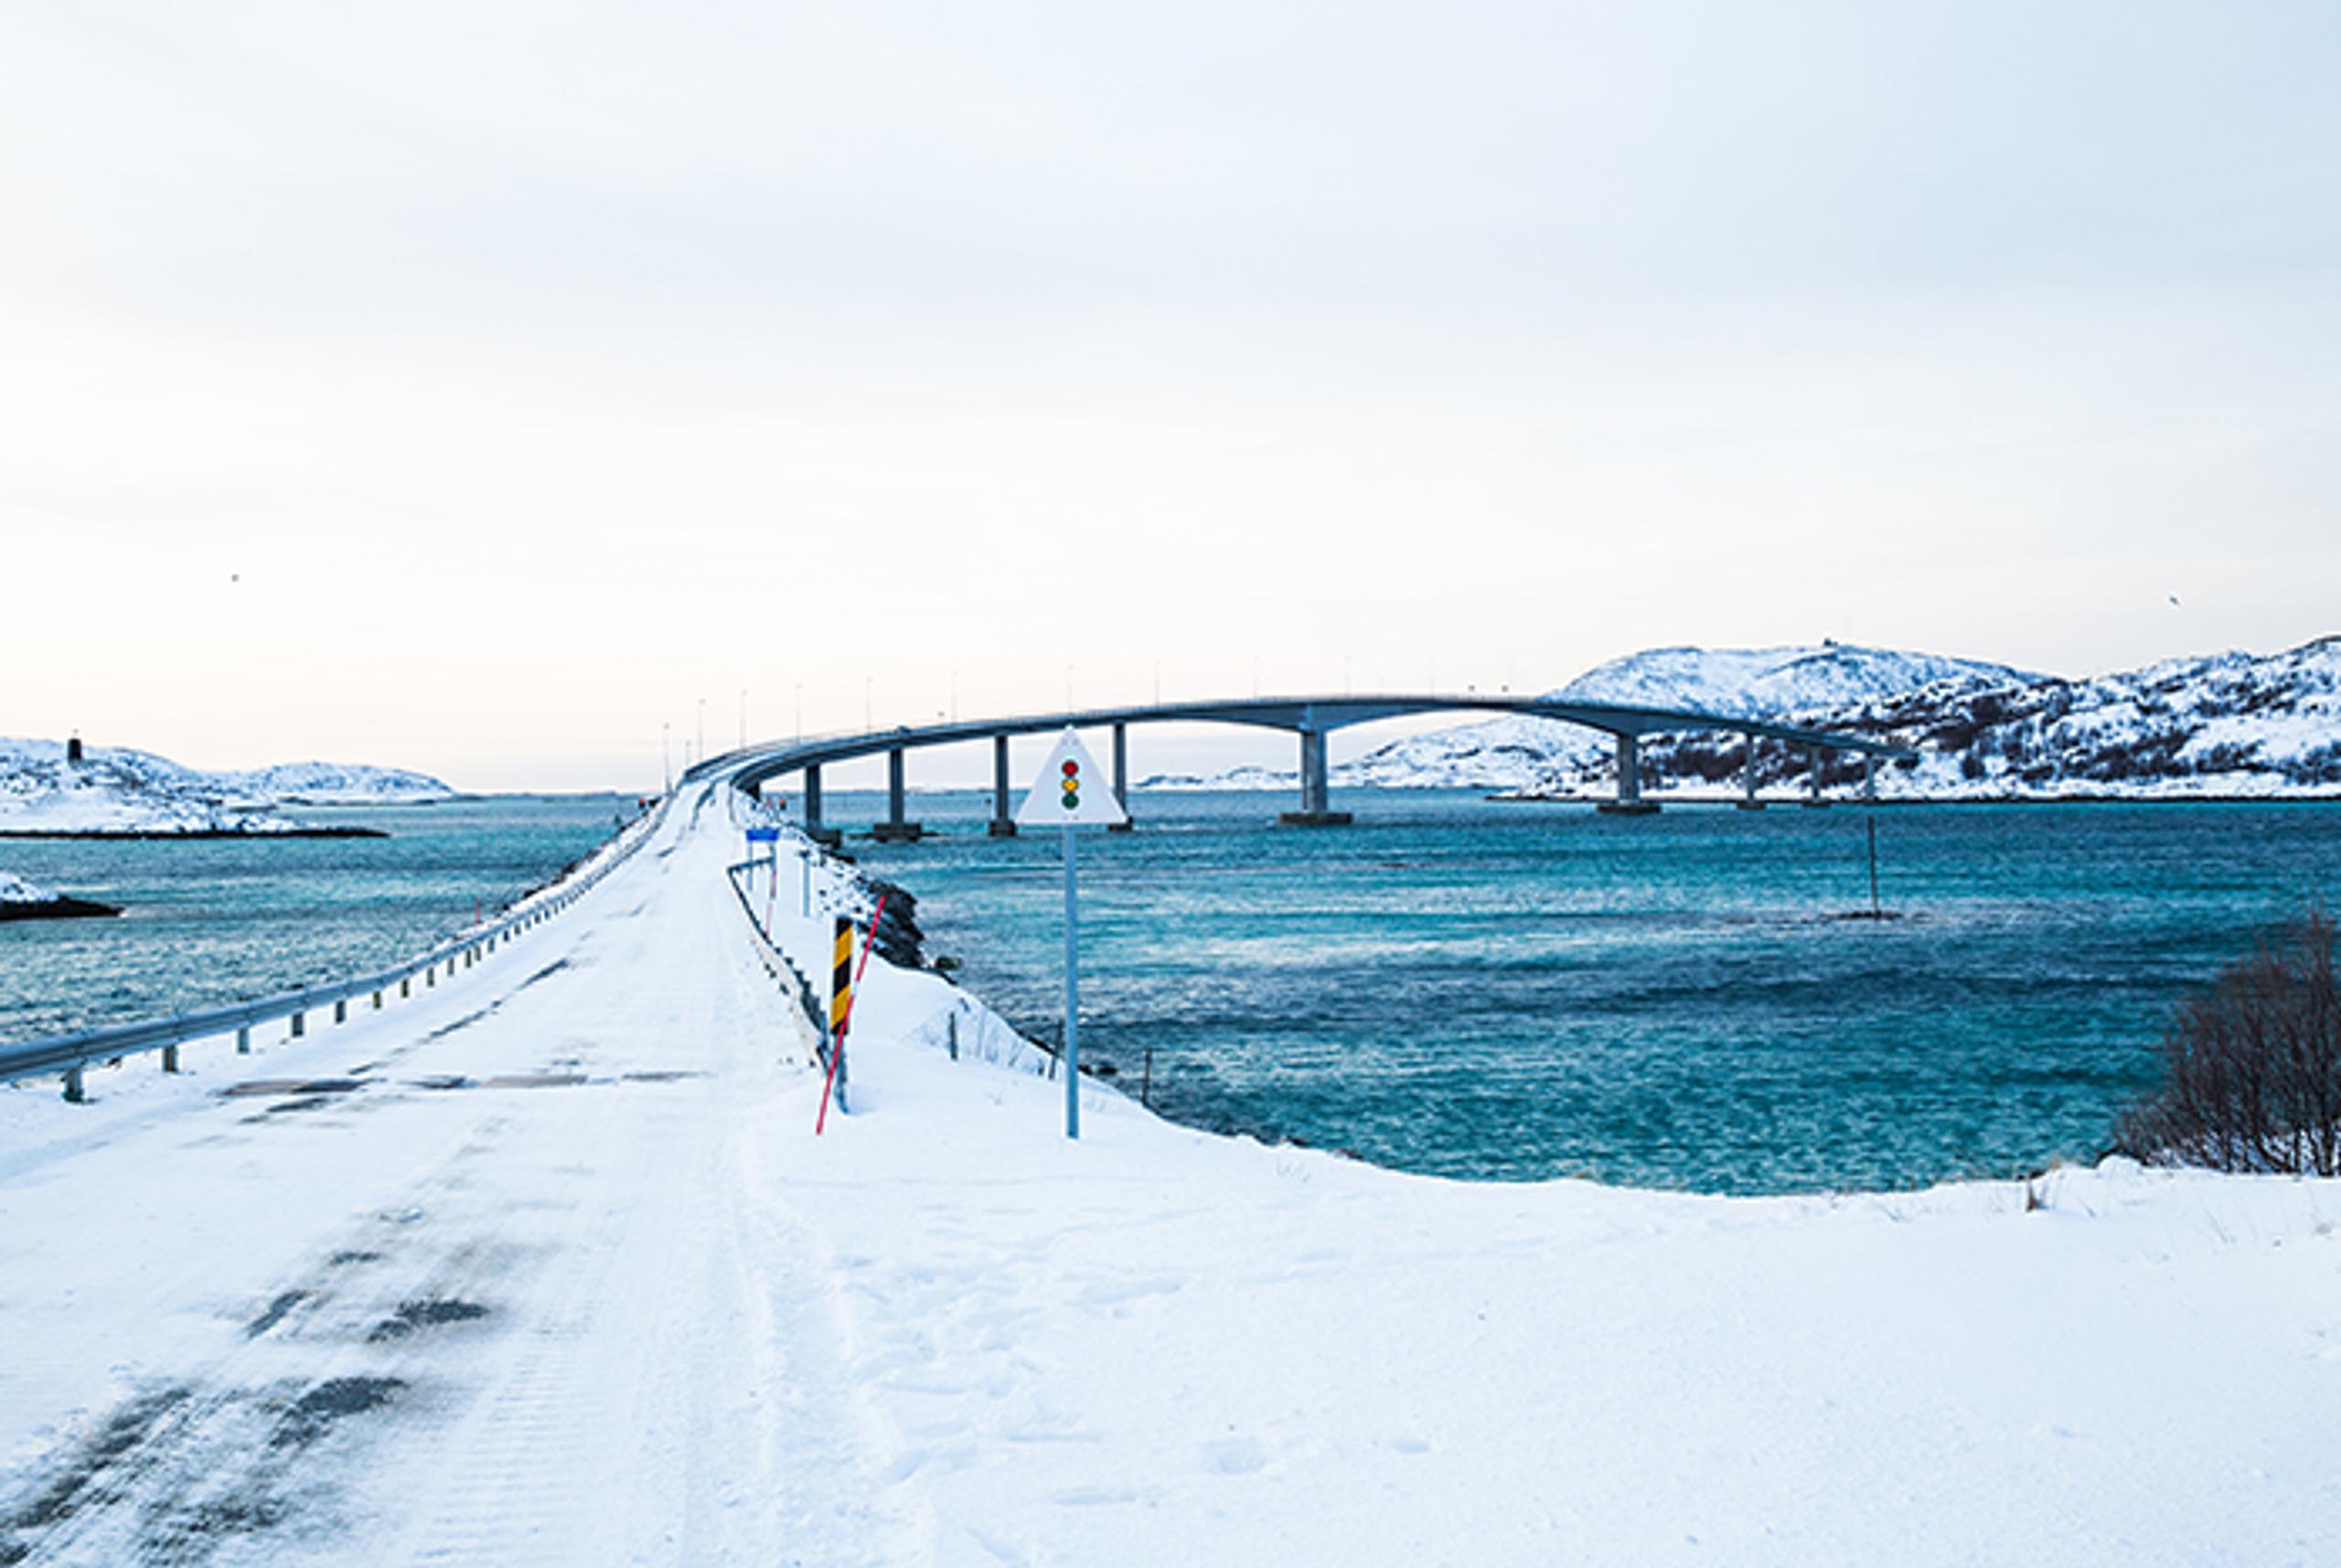 snow-covered bridge